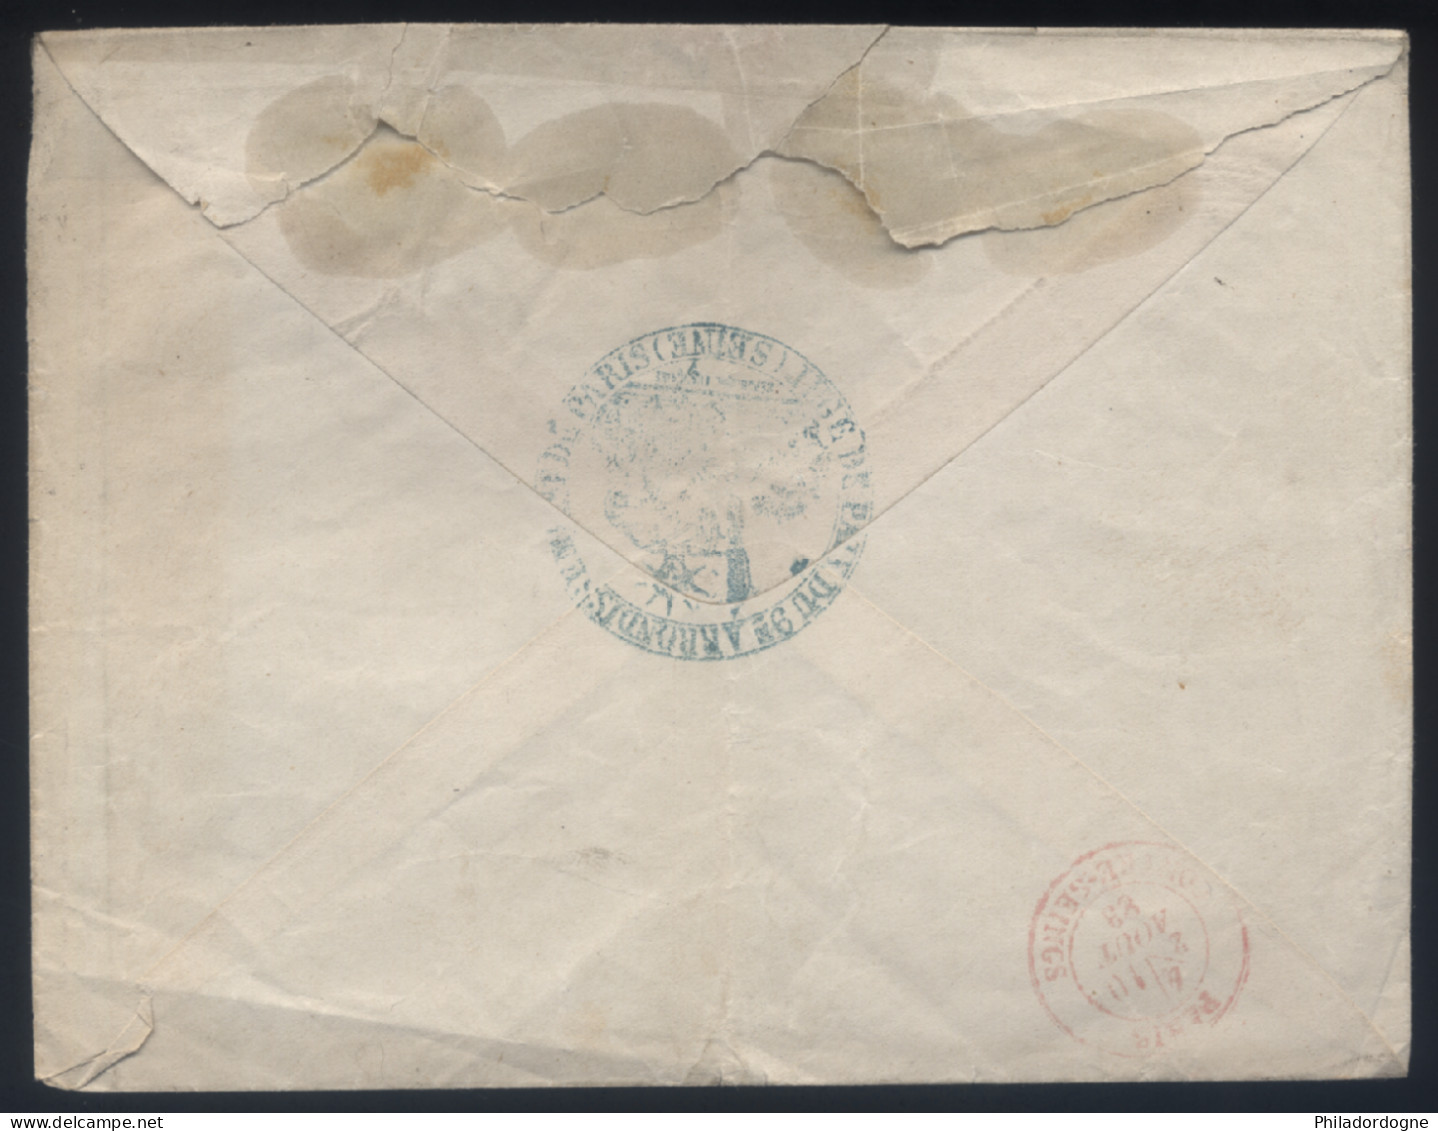 France - Taxe Yvert N° 18 Obl. Sur LsC Triangle Avec Dents Rue Milton Juge De Paix Contre Seings Rouge - 10/08/1888 - 1859-1959 Lettres & Documents